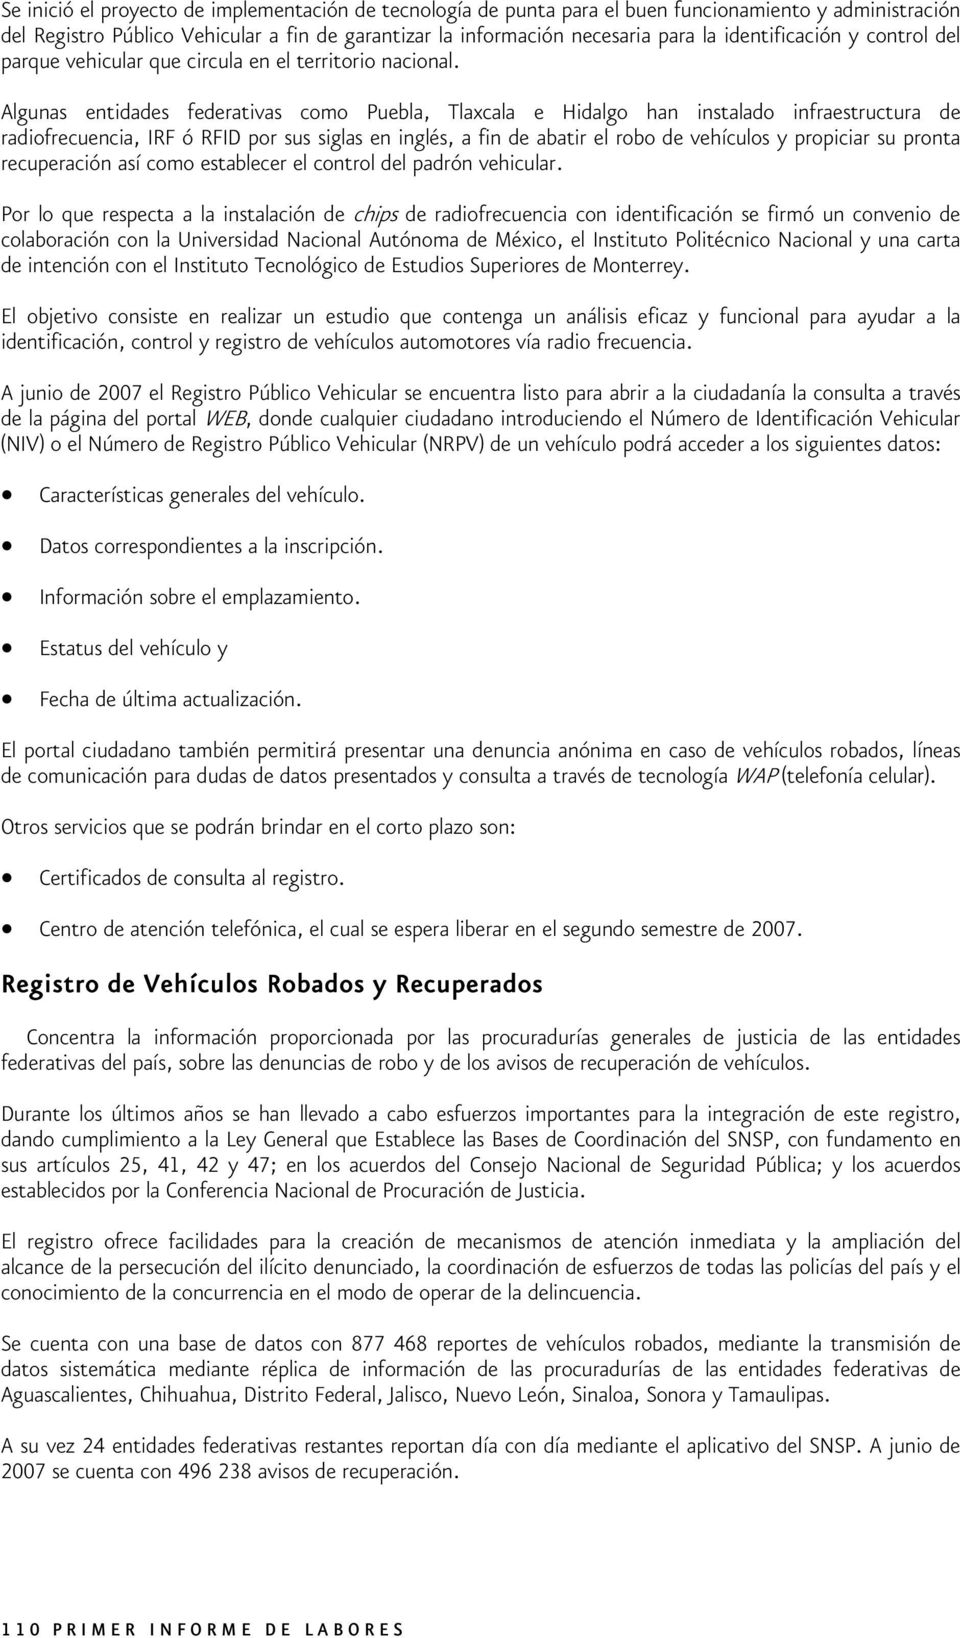 Algunas entidades federativas como Puebla, Tlaxcala e Hidalgo han instalado infraestructura de radiofrecuencia, IRF ó RFID por sus siglas en inglés, a fin de abatir el robo de vehículos y propiciar